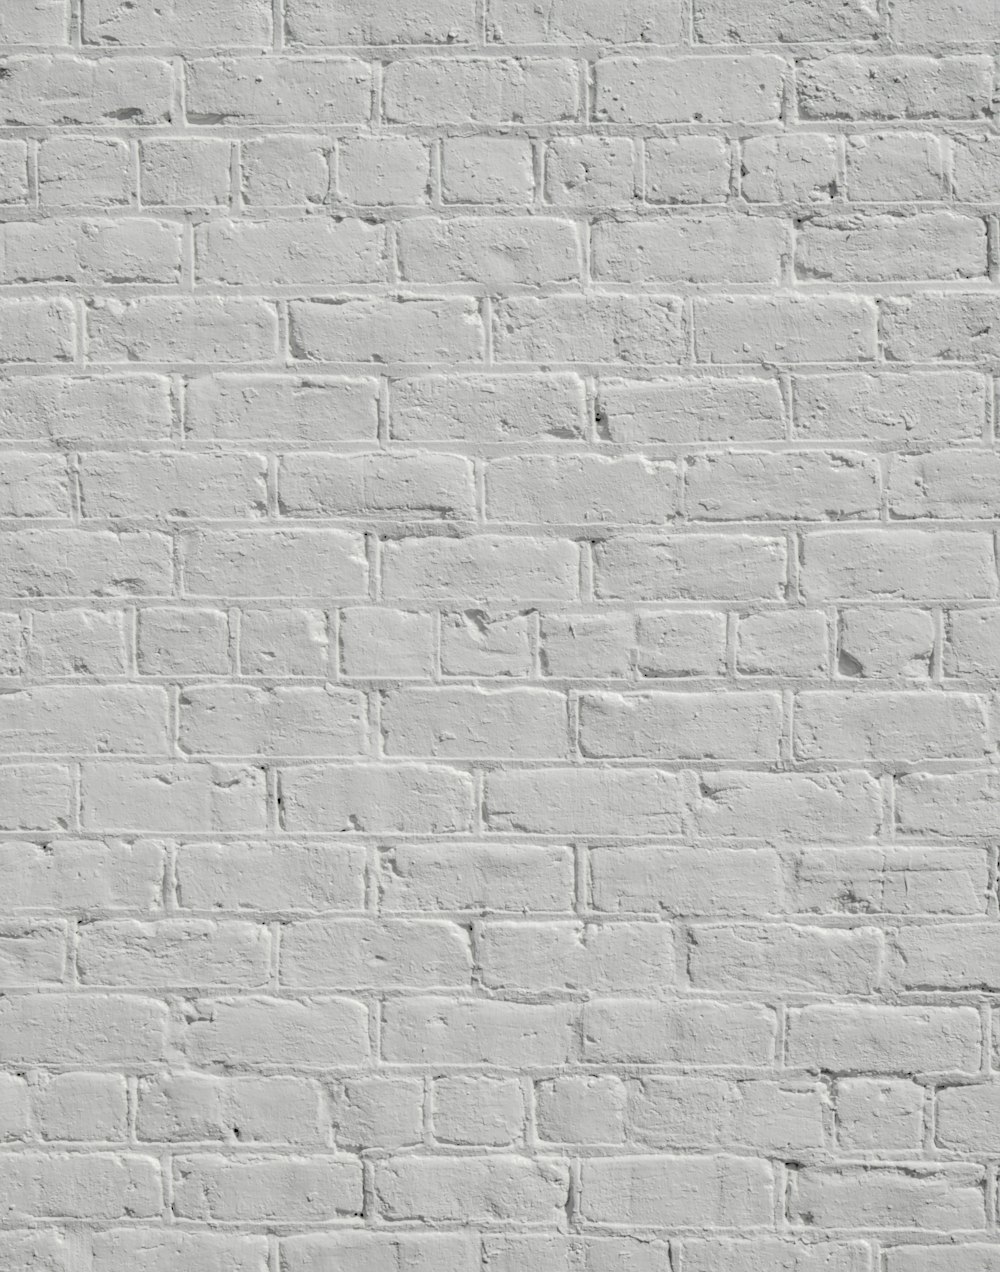 a white brick wall with no mortars or mortars